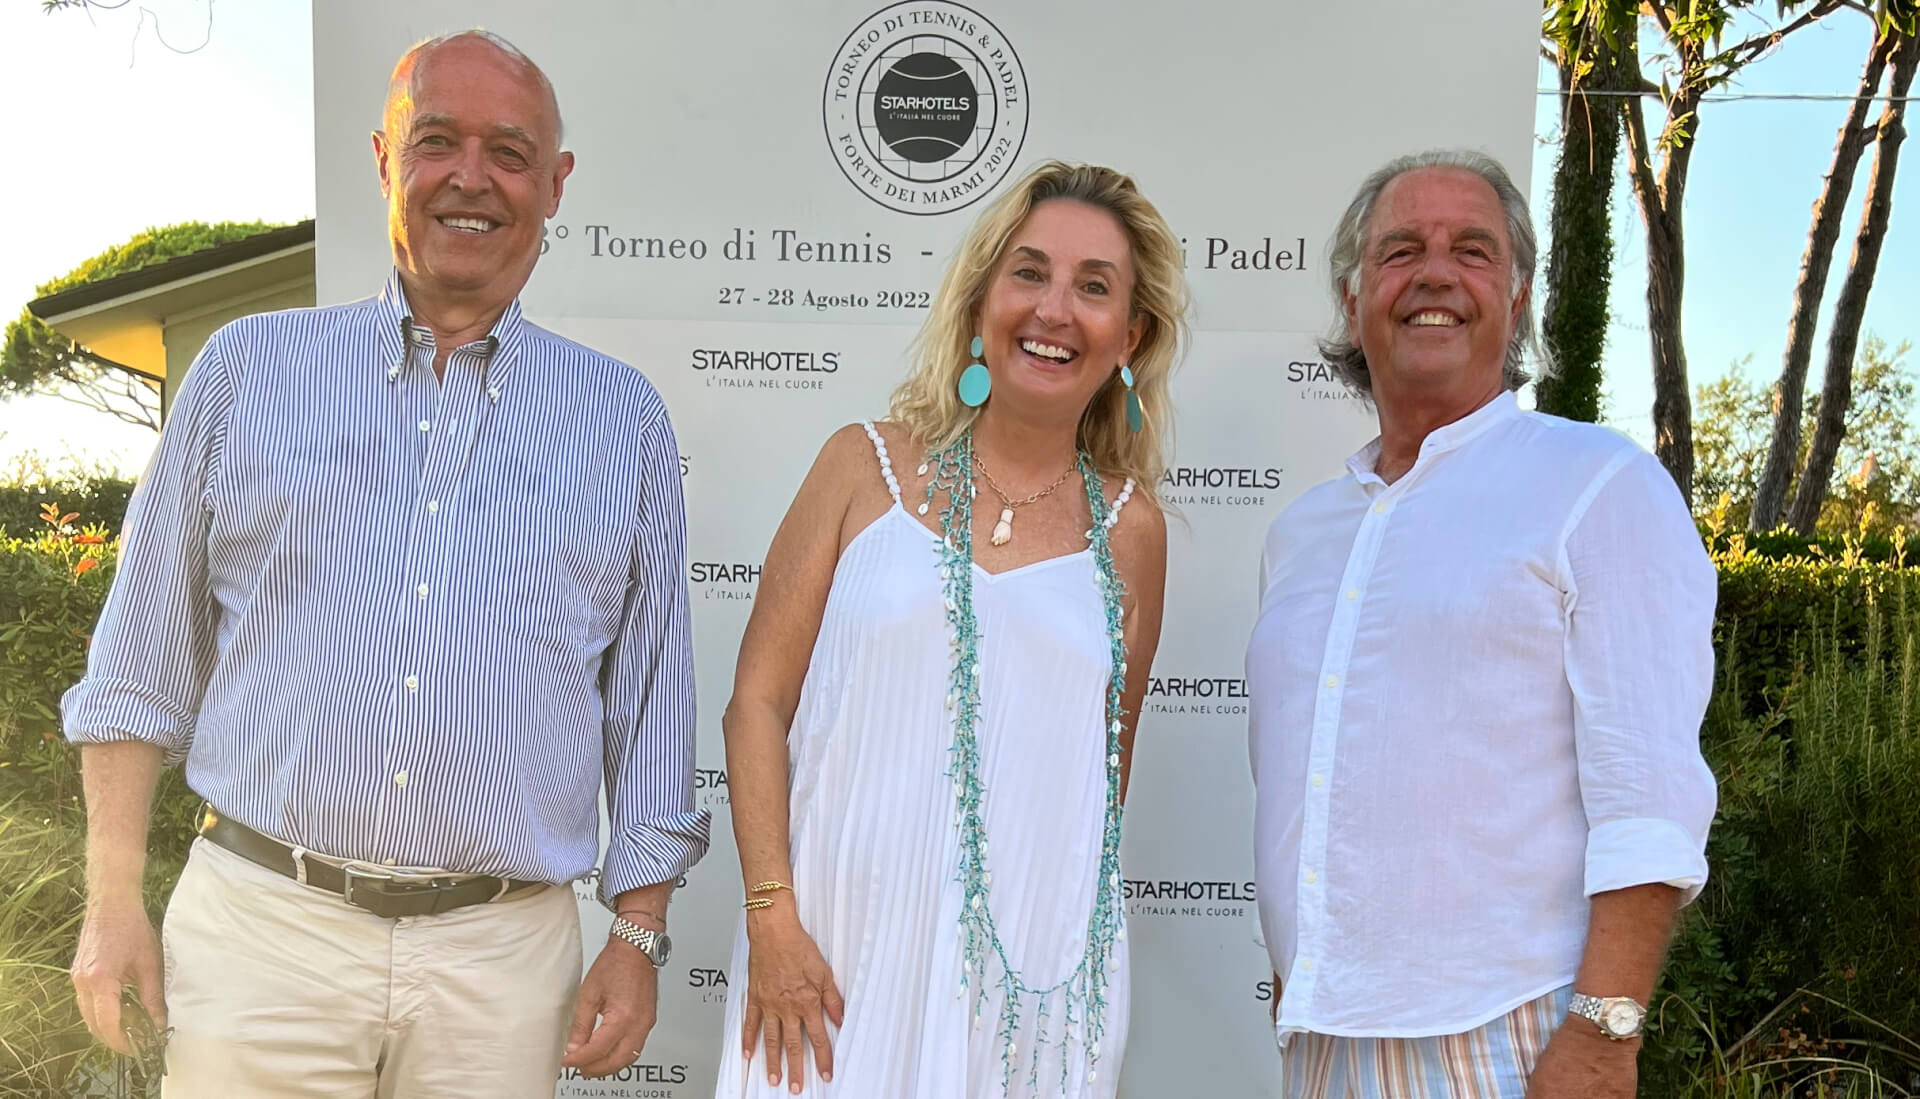 Ubaldo Scanagatta, Elisabetta Fabri and Paolo Bertolucci